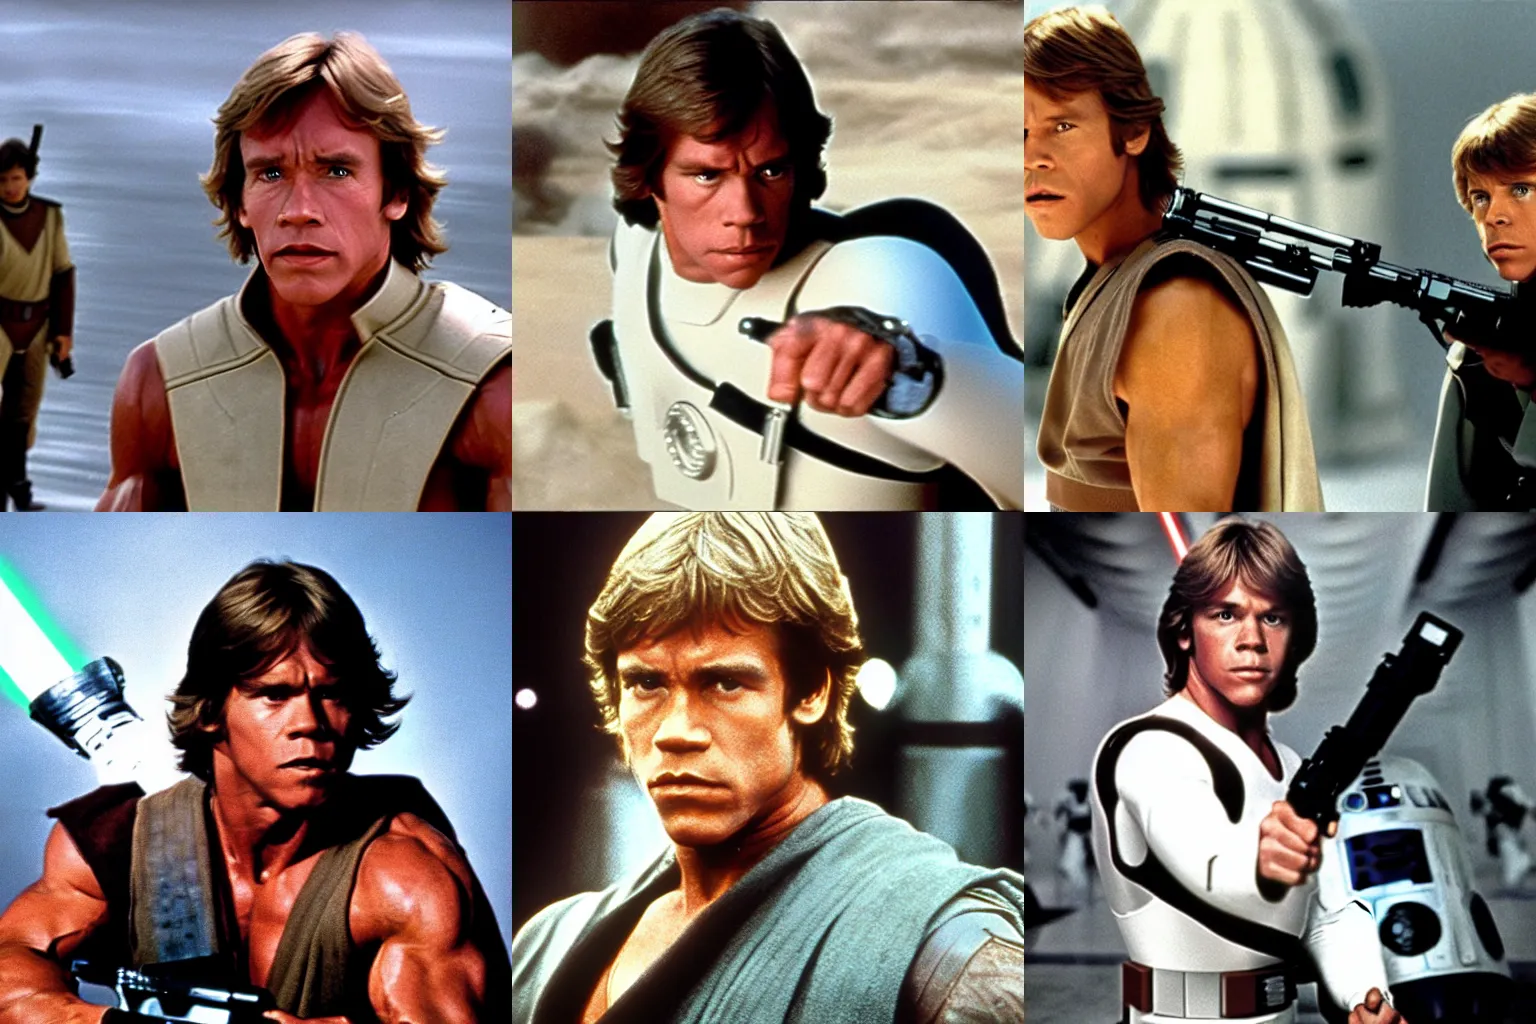 Prompt: A still from Star Wars (1977) of Arnold Schwarzenegger playing Luke Skywalker in Star Wars